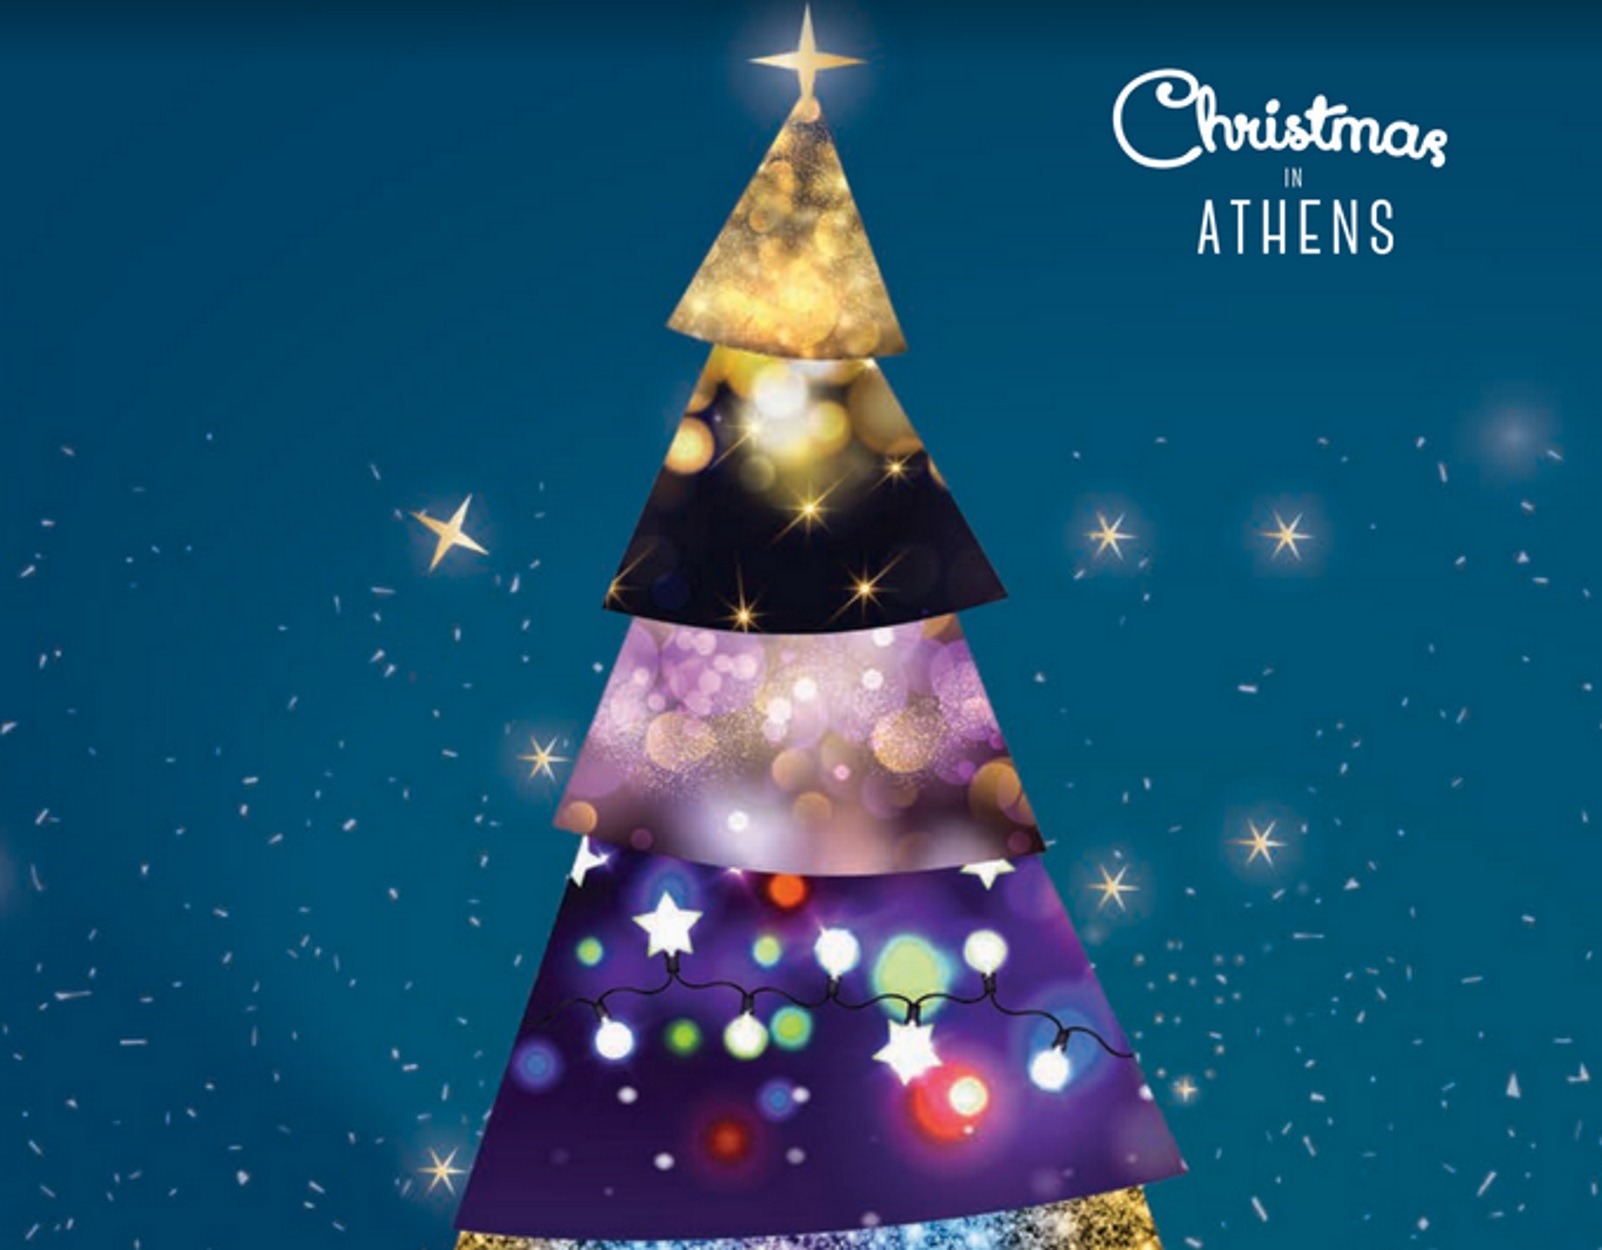 Δήμος Αθηναίων: Χριστούγεννα στην Αθήνα με σύνθημα “Νιώσε τη μαγεία”!